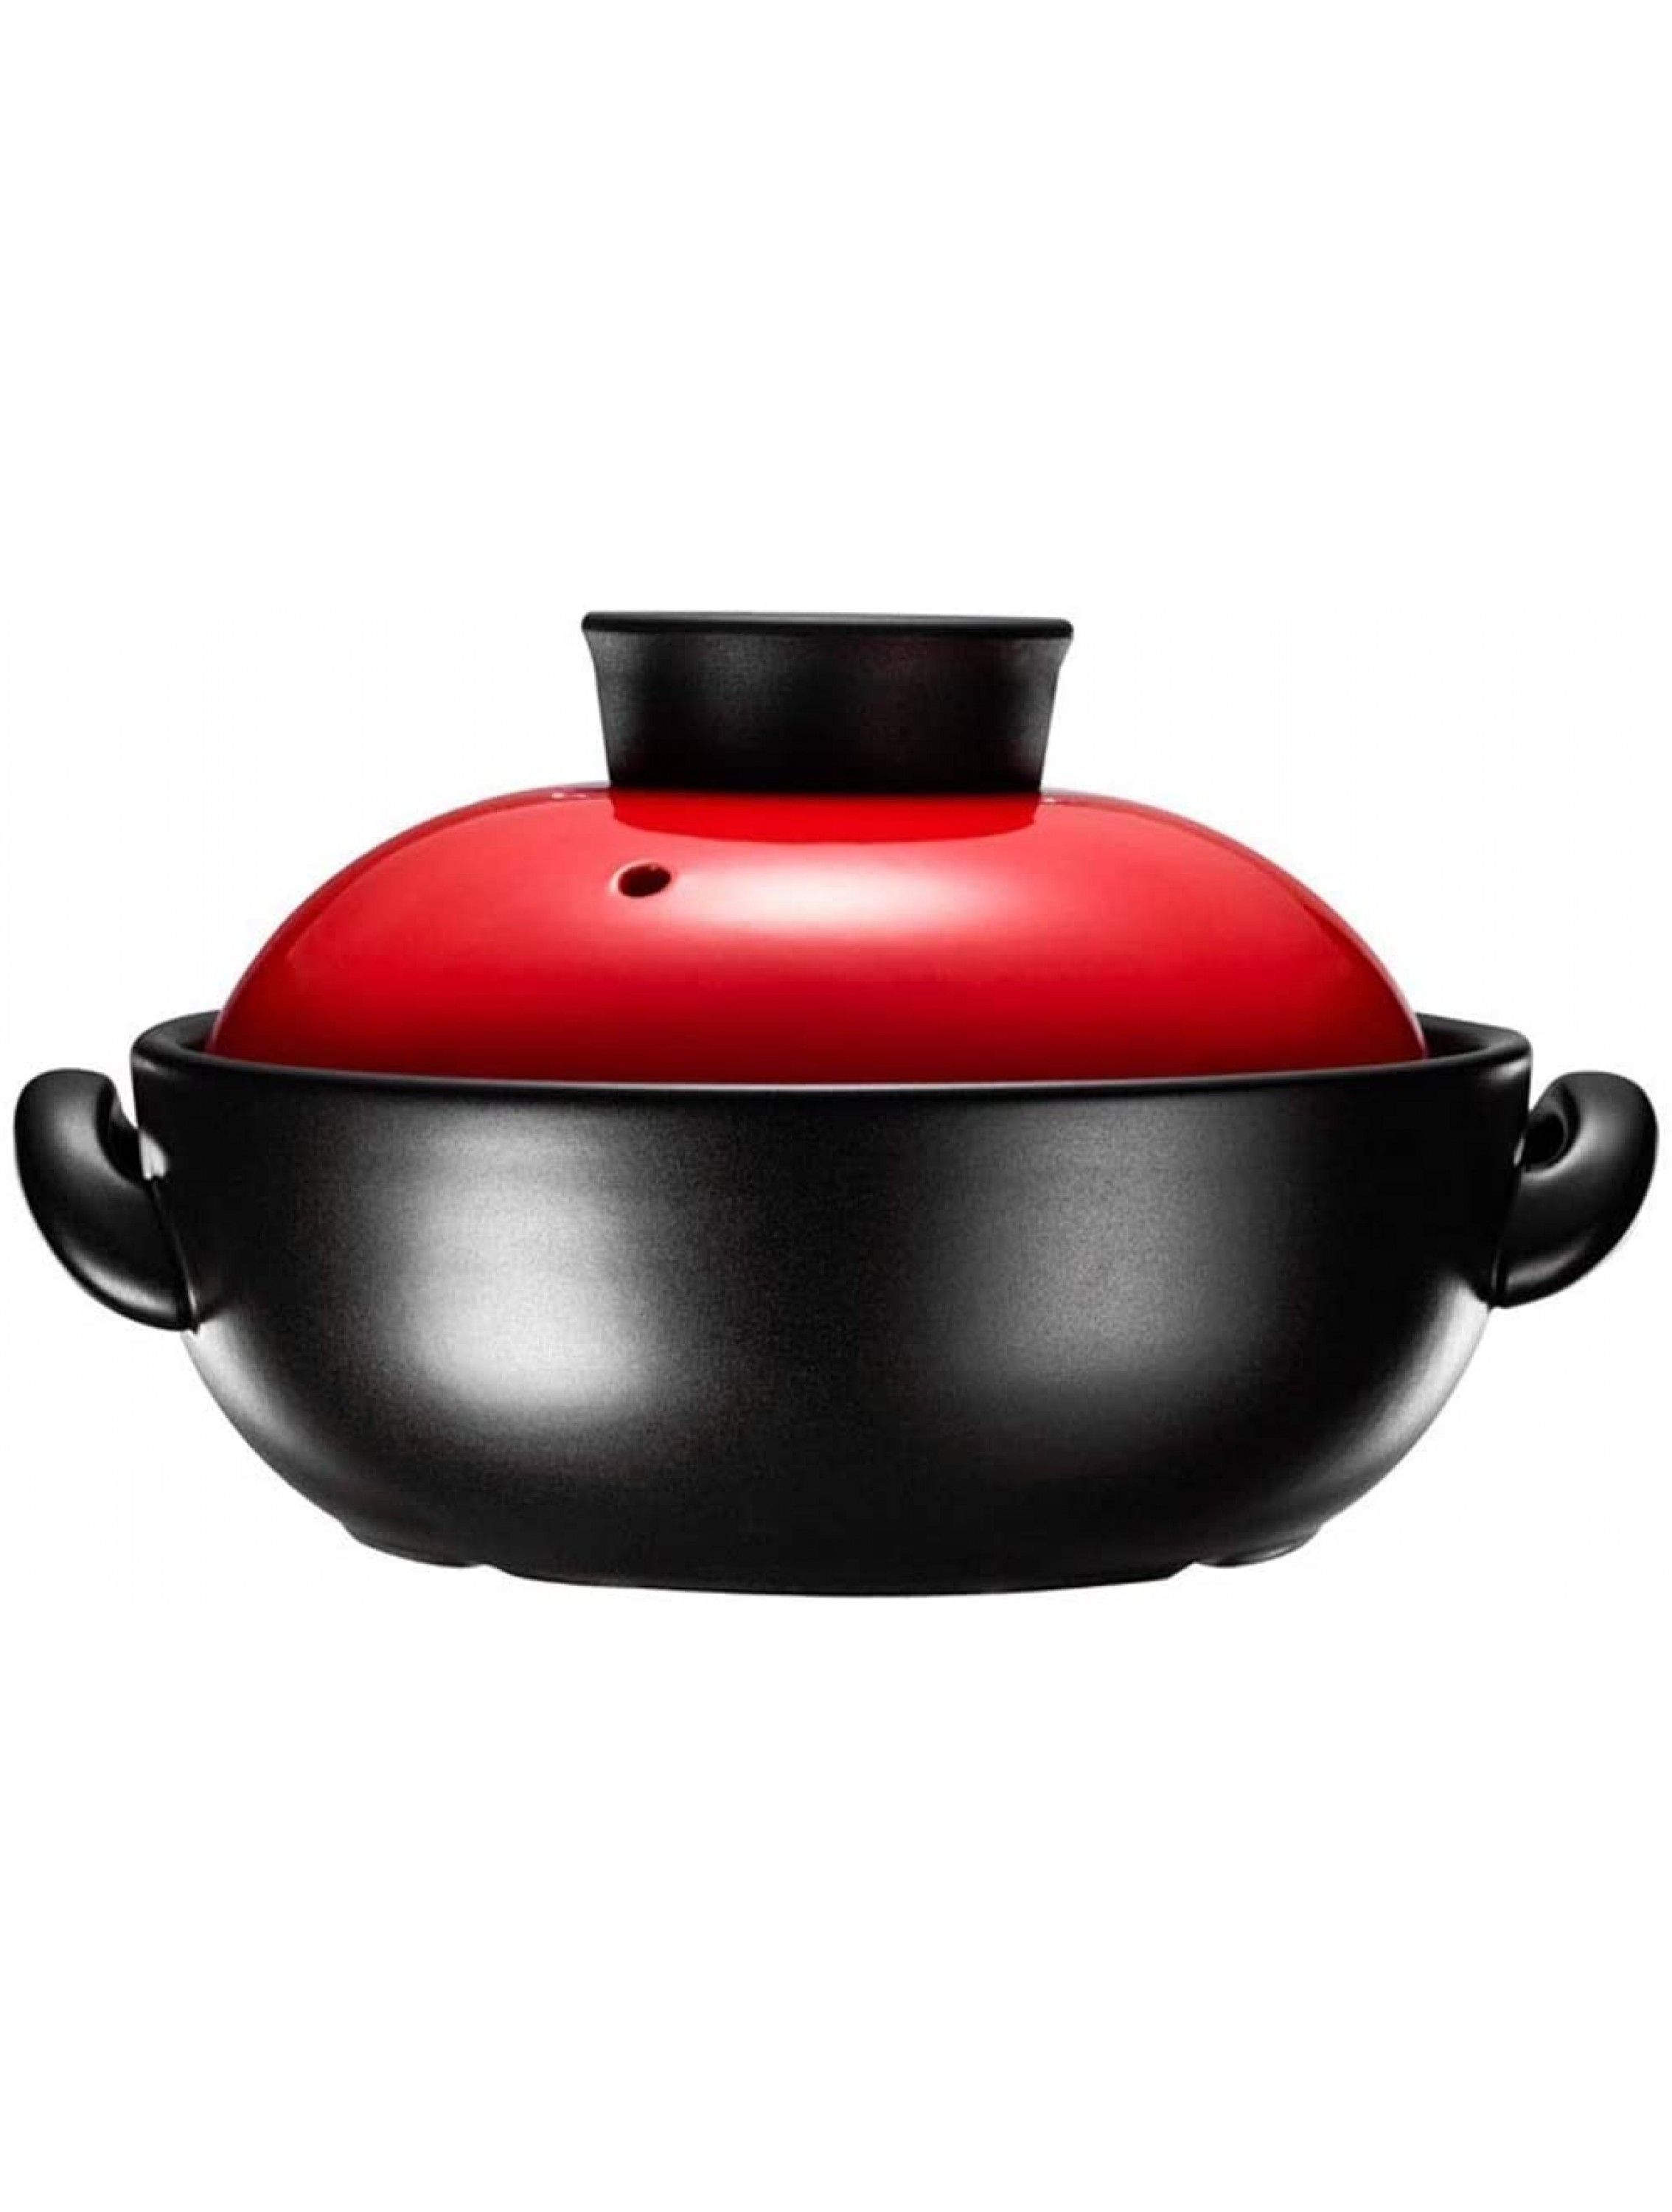 HIZLJJ Enameled Cast Iron Shallow Casserole Pan With Cover Casserole Fashion Soup Pot Nutritious Porridge Pot Kitchen Pot Pot Clay Pot - BNGY93JG3